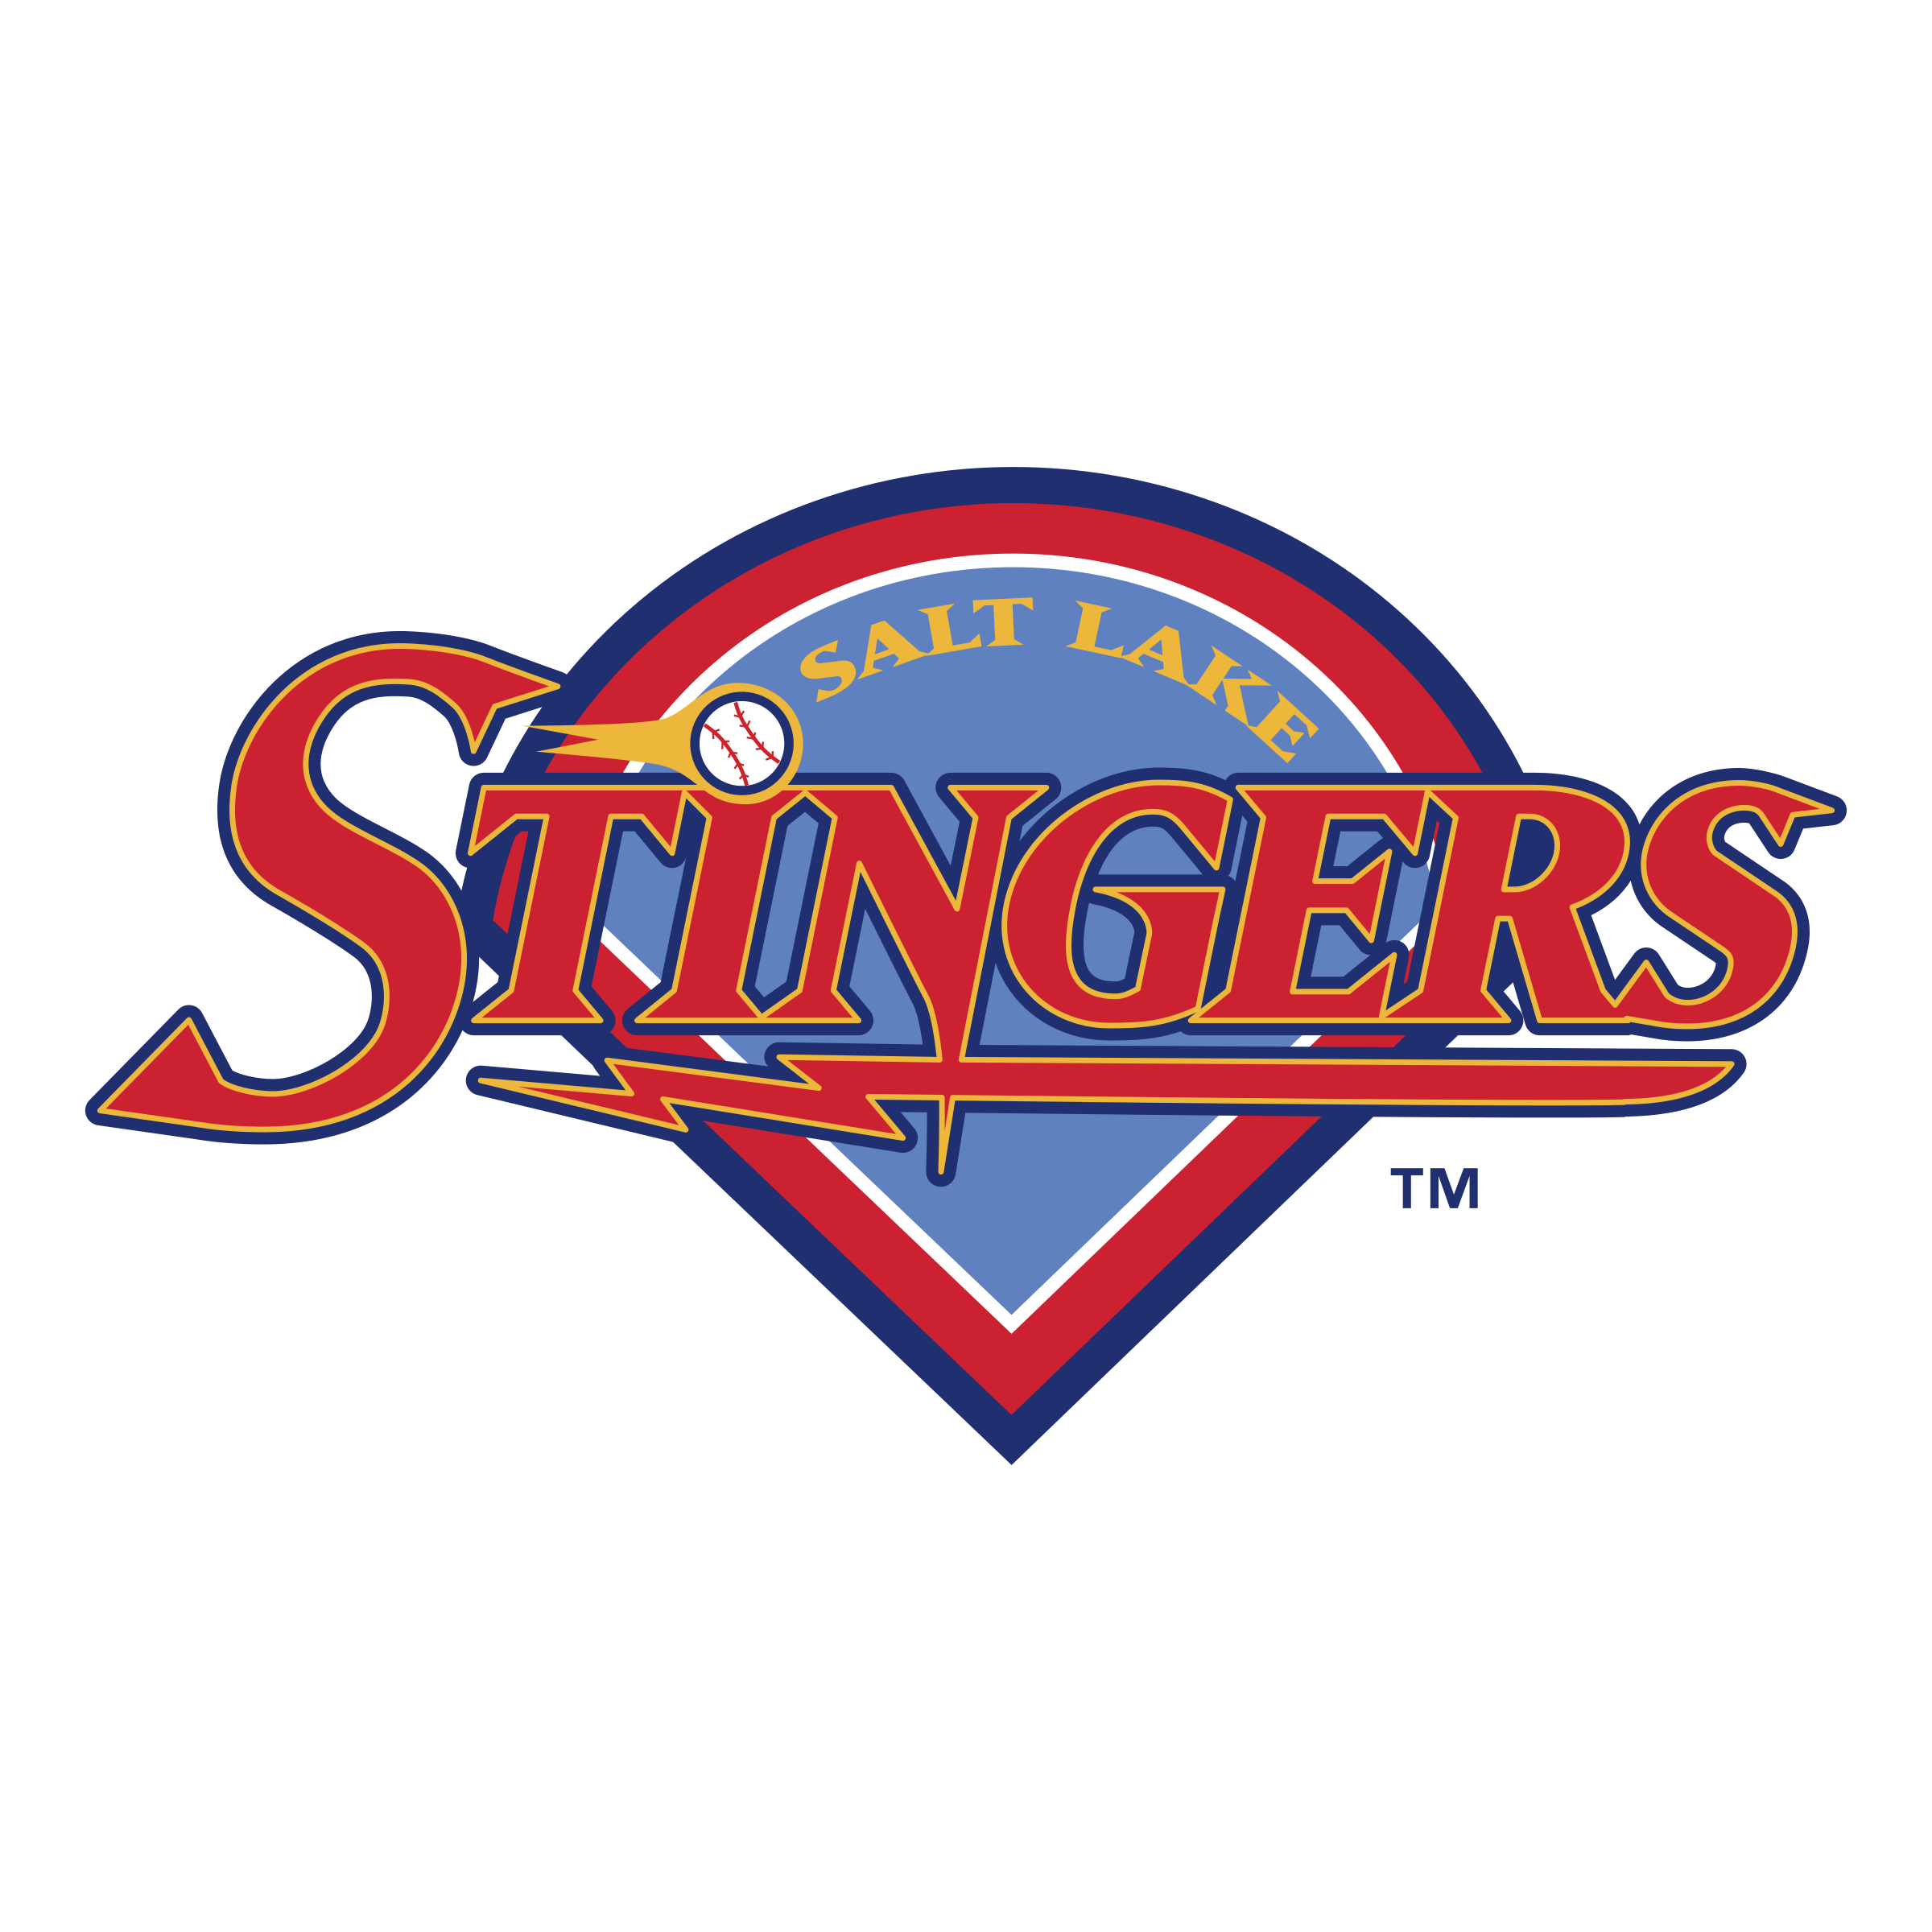 Stingers Logo - Salt Lake Stingers Logo PNG Transparent & SVG Vector - Freebie Supply